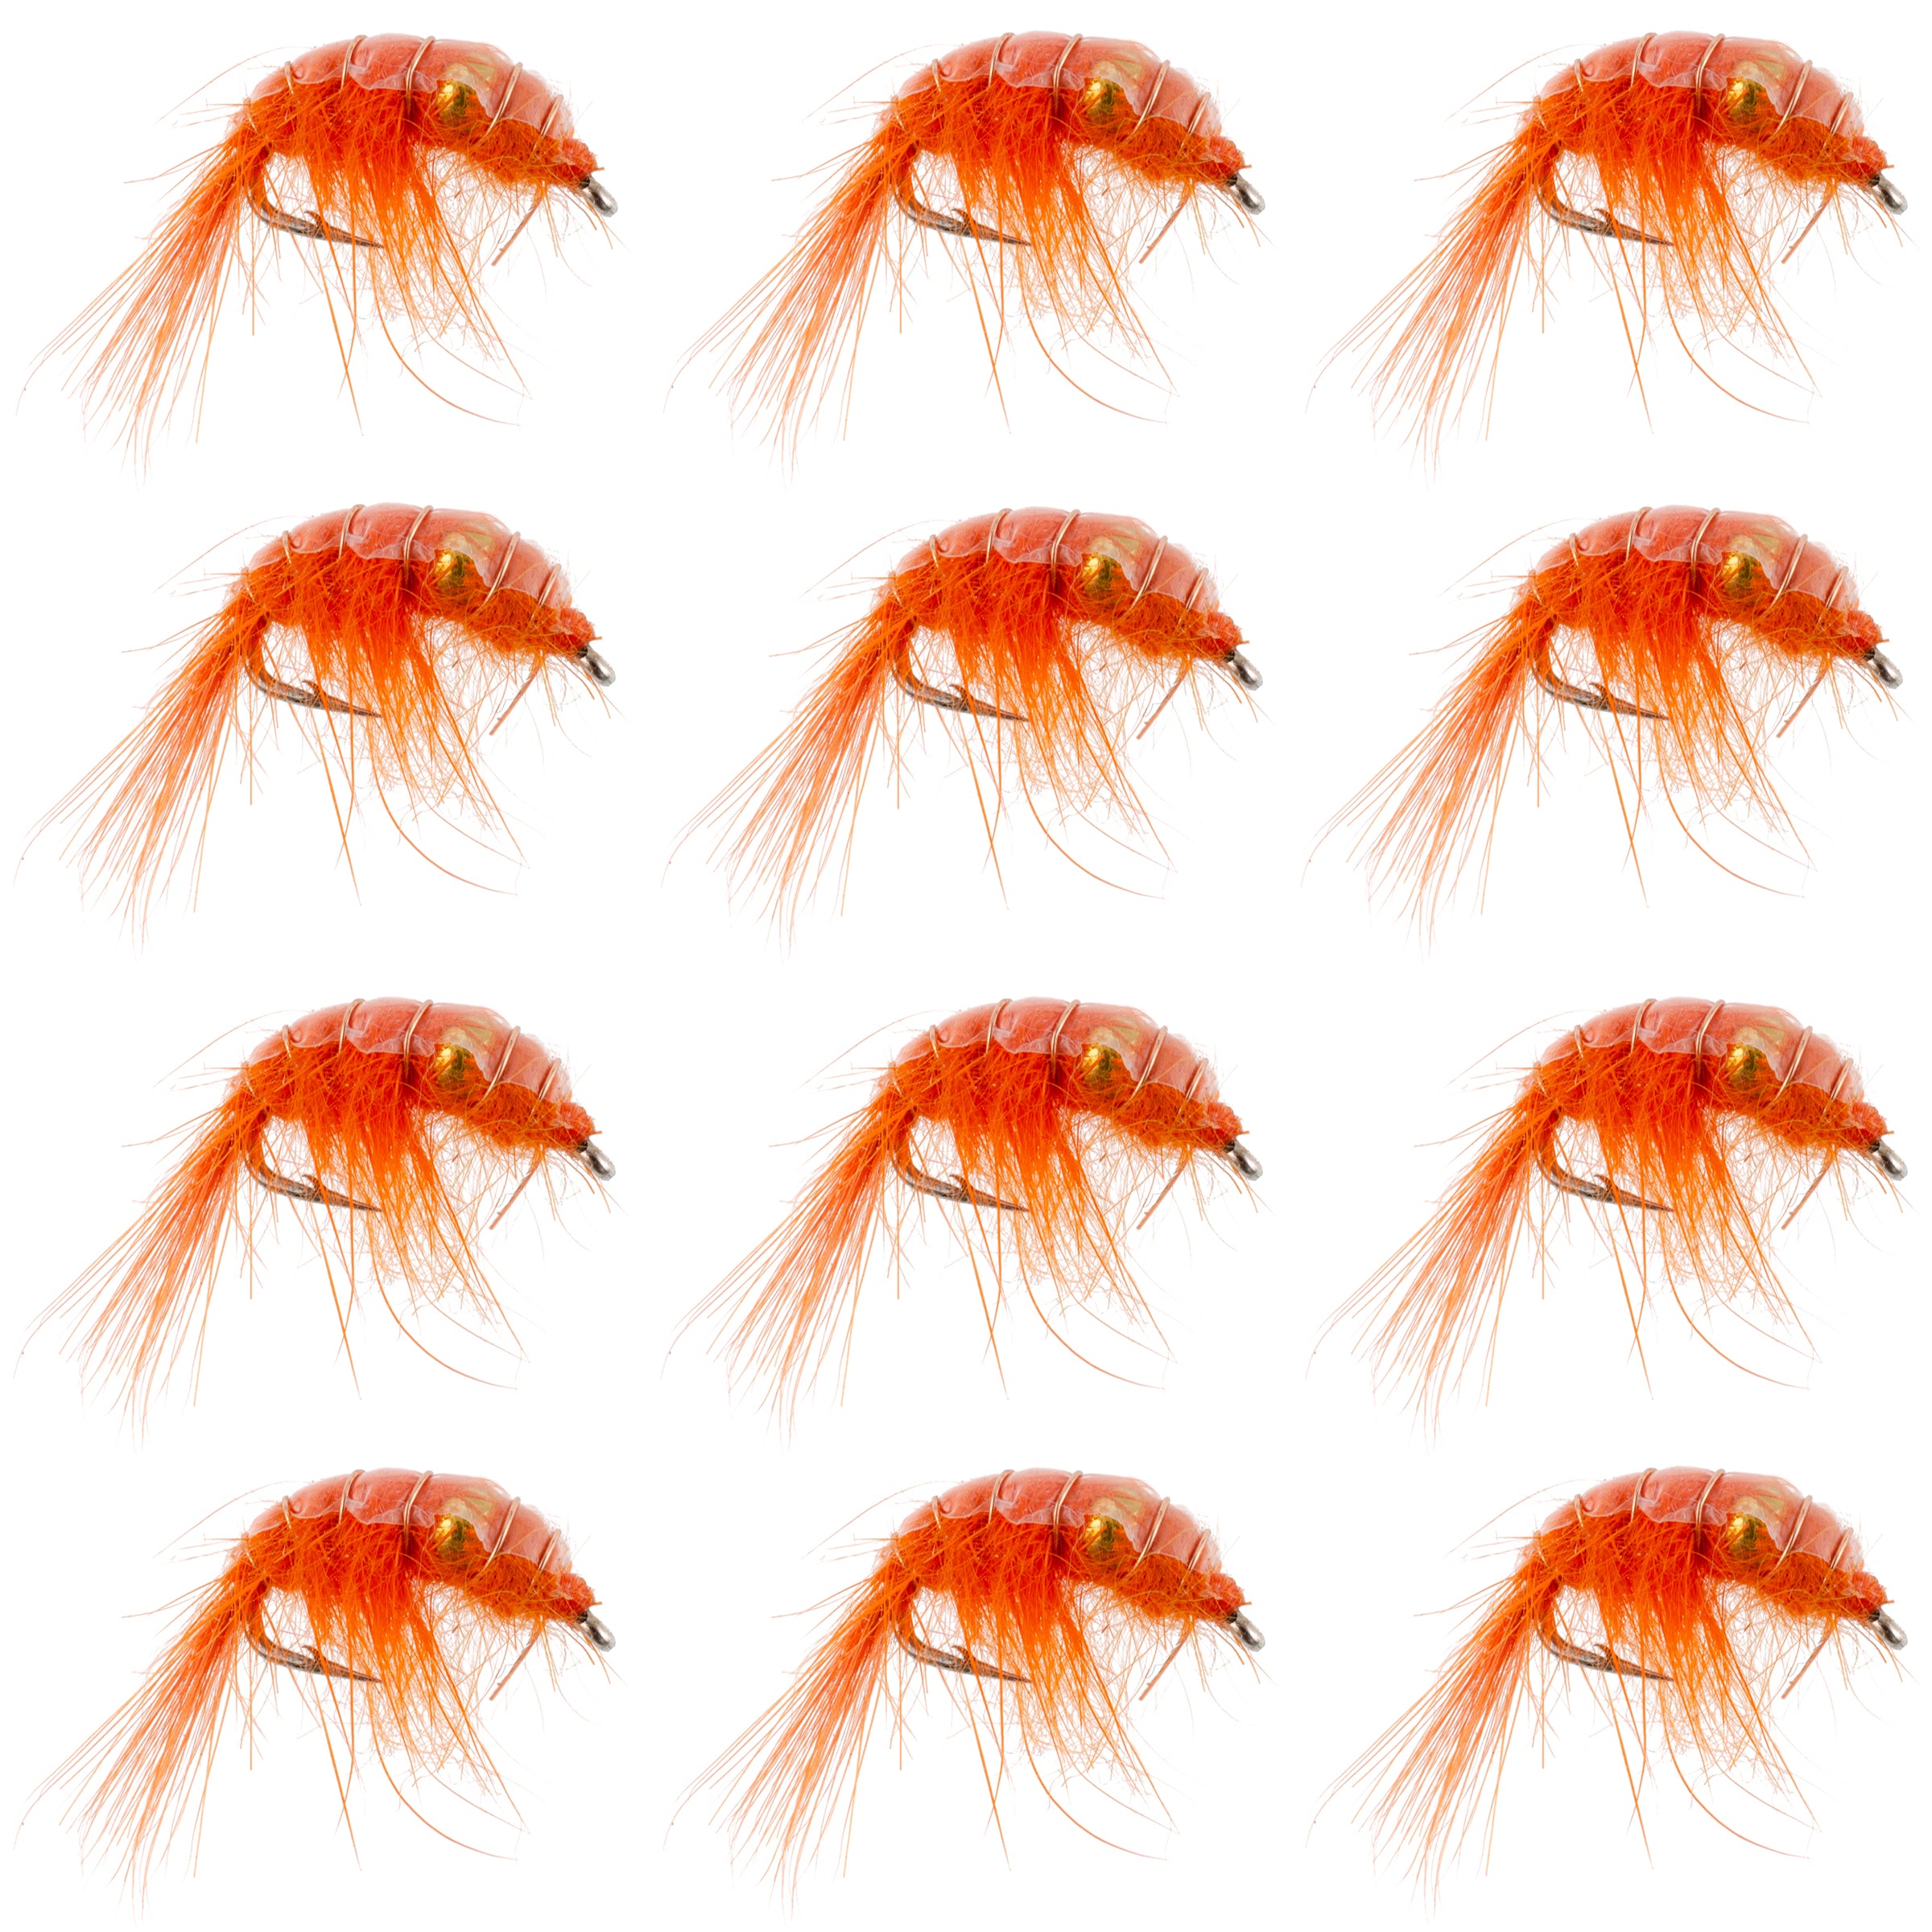 Patrón Scud de camarón con cuentas naranjas - 1 docena tamaño 12 - Moscas ninfa de pesca con mosca del lago Tailwater